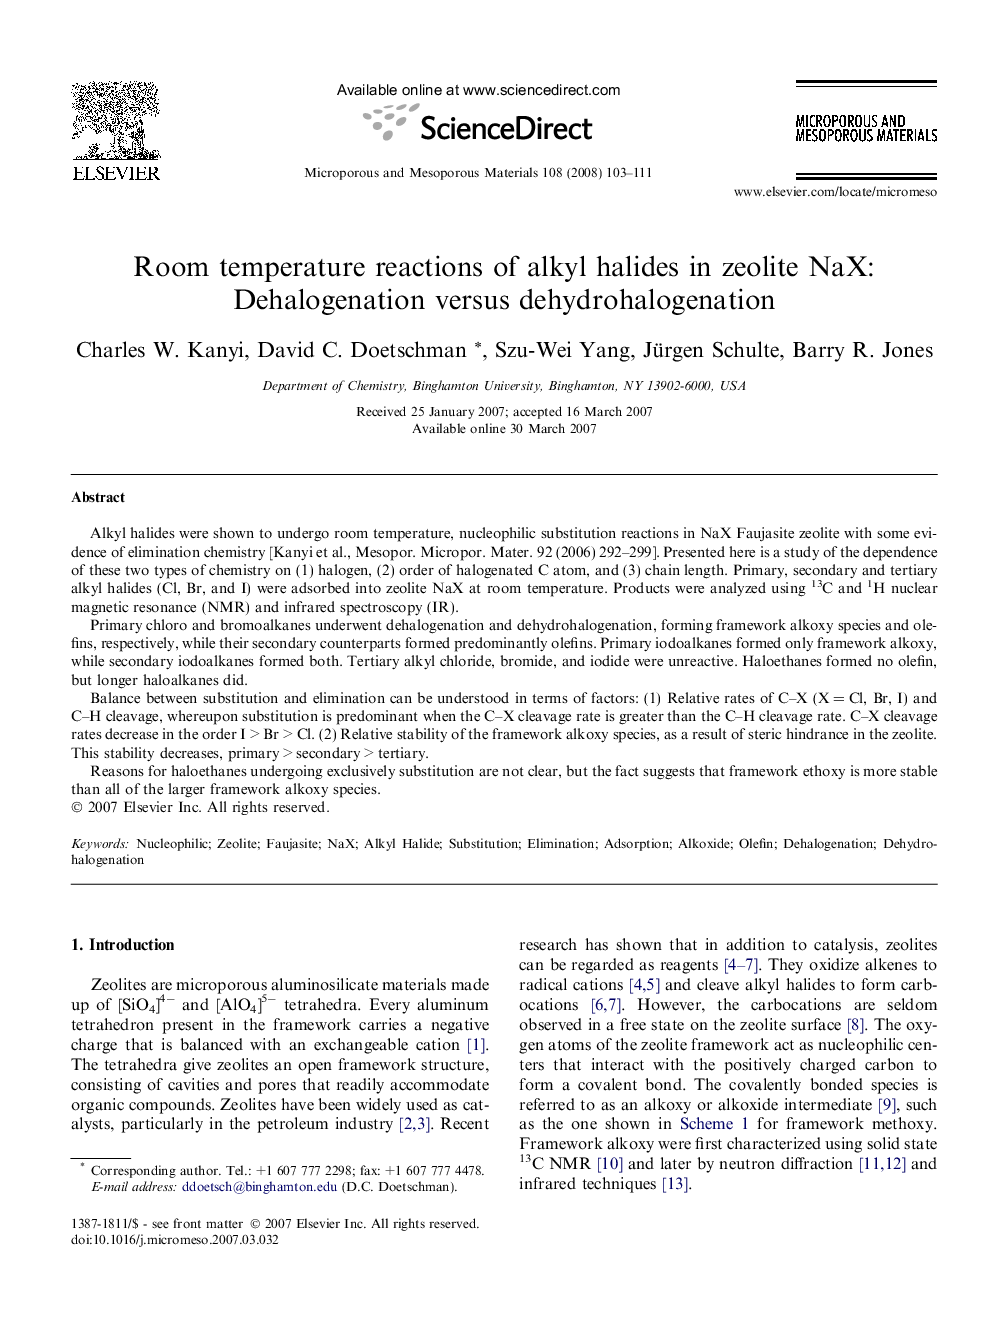 Room temperature reactions of alkyl halides in zeolite NaX: Dehalogenation versus dehydrohalogenation